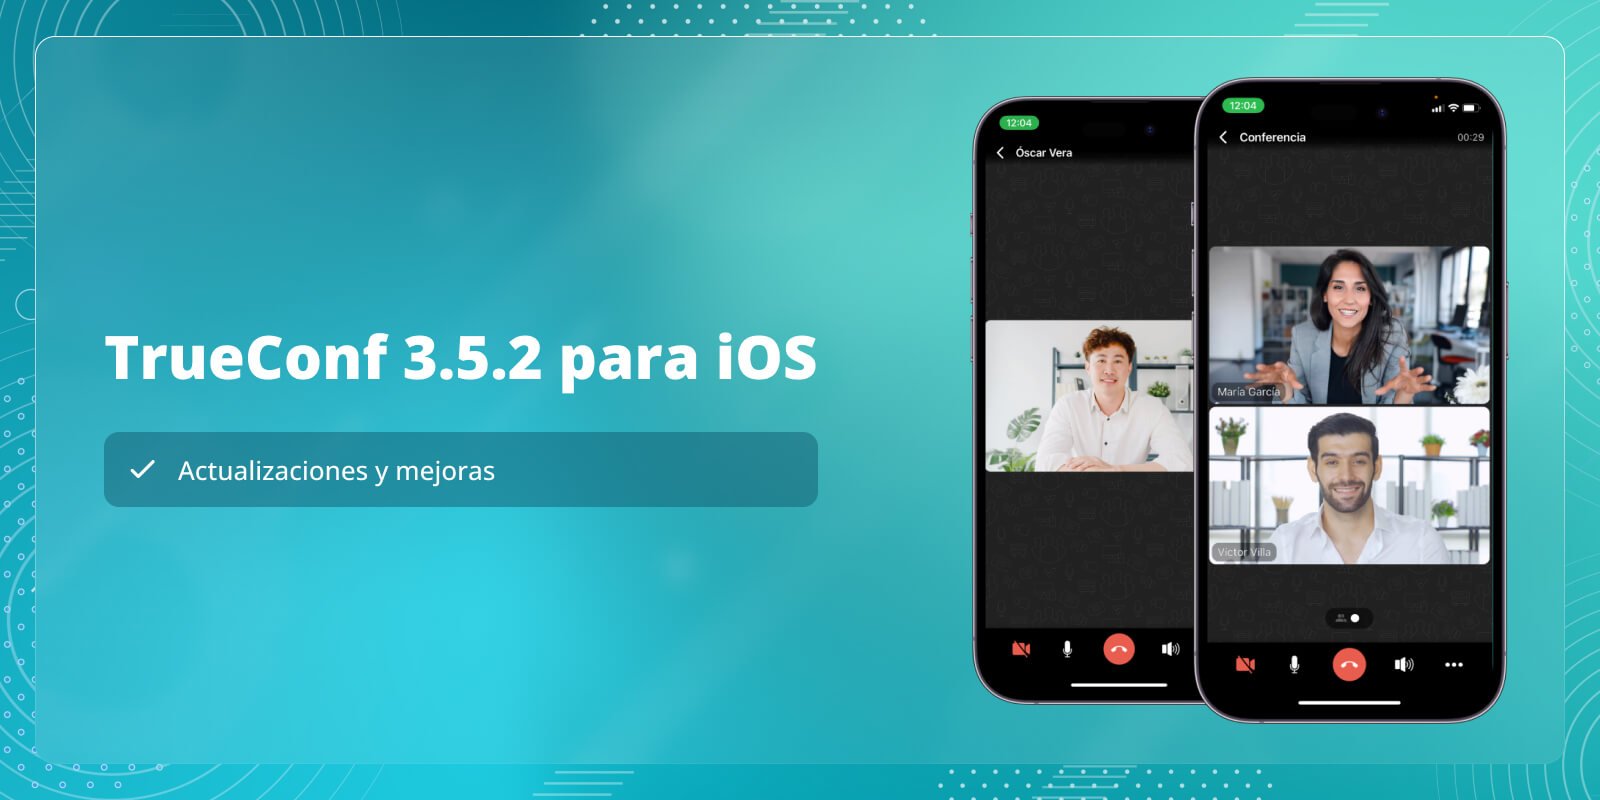 TrueConf 3.5.2 para iOS: actualizaciones y mejoras 5